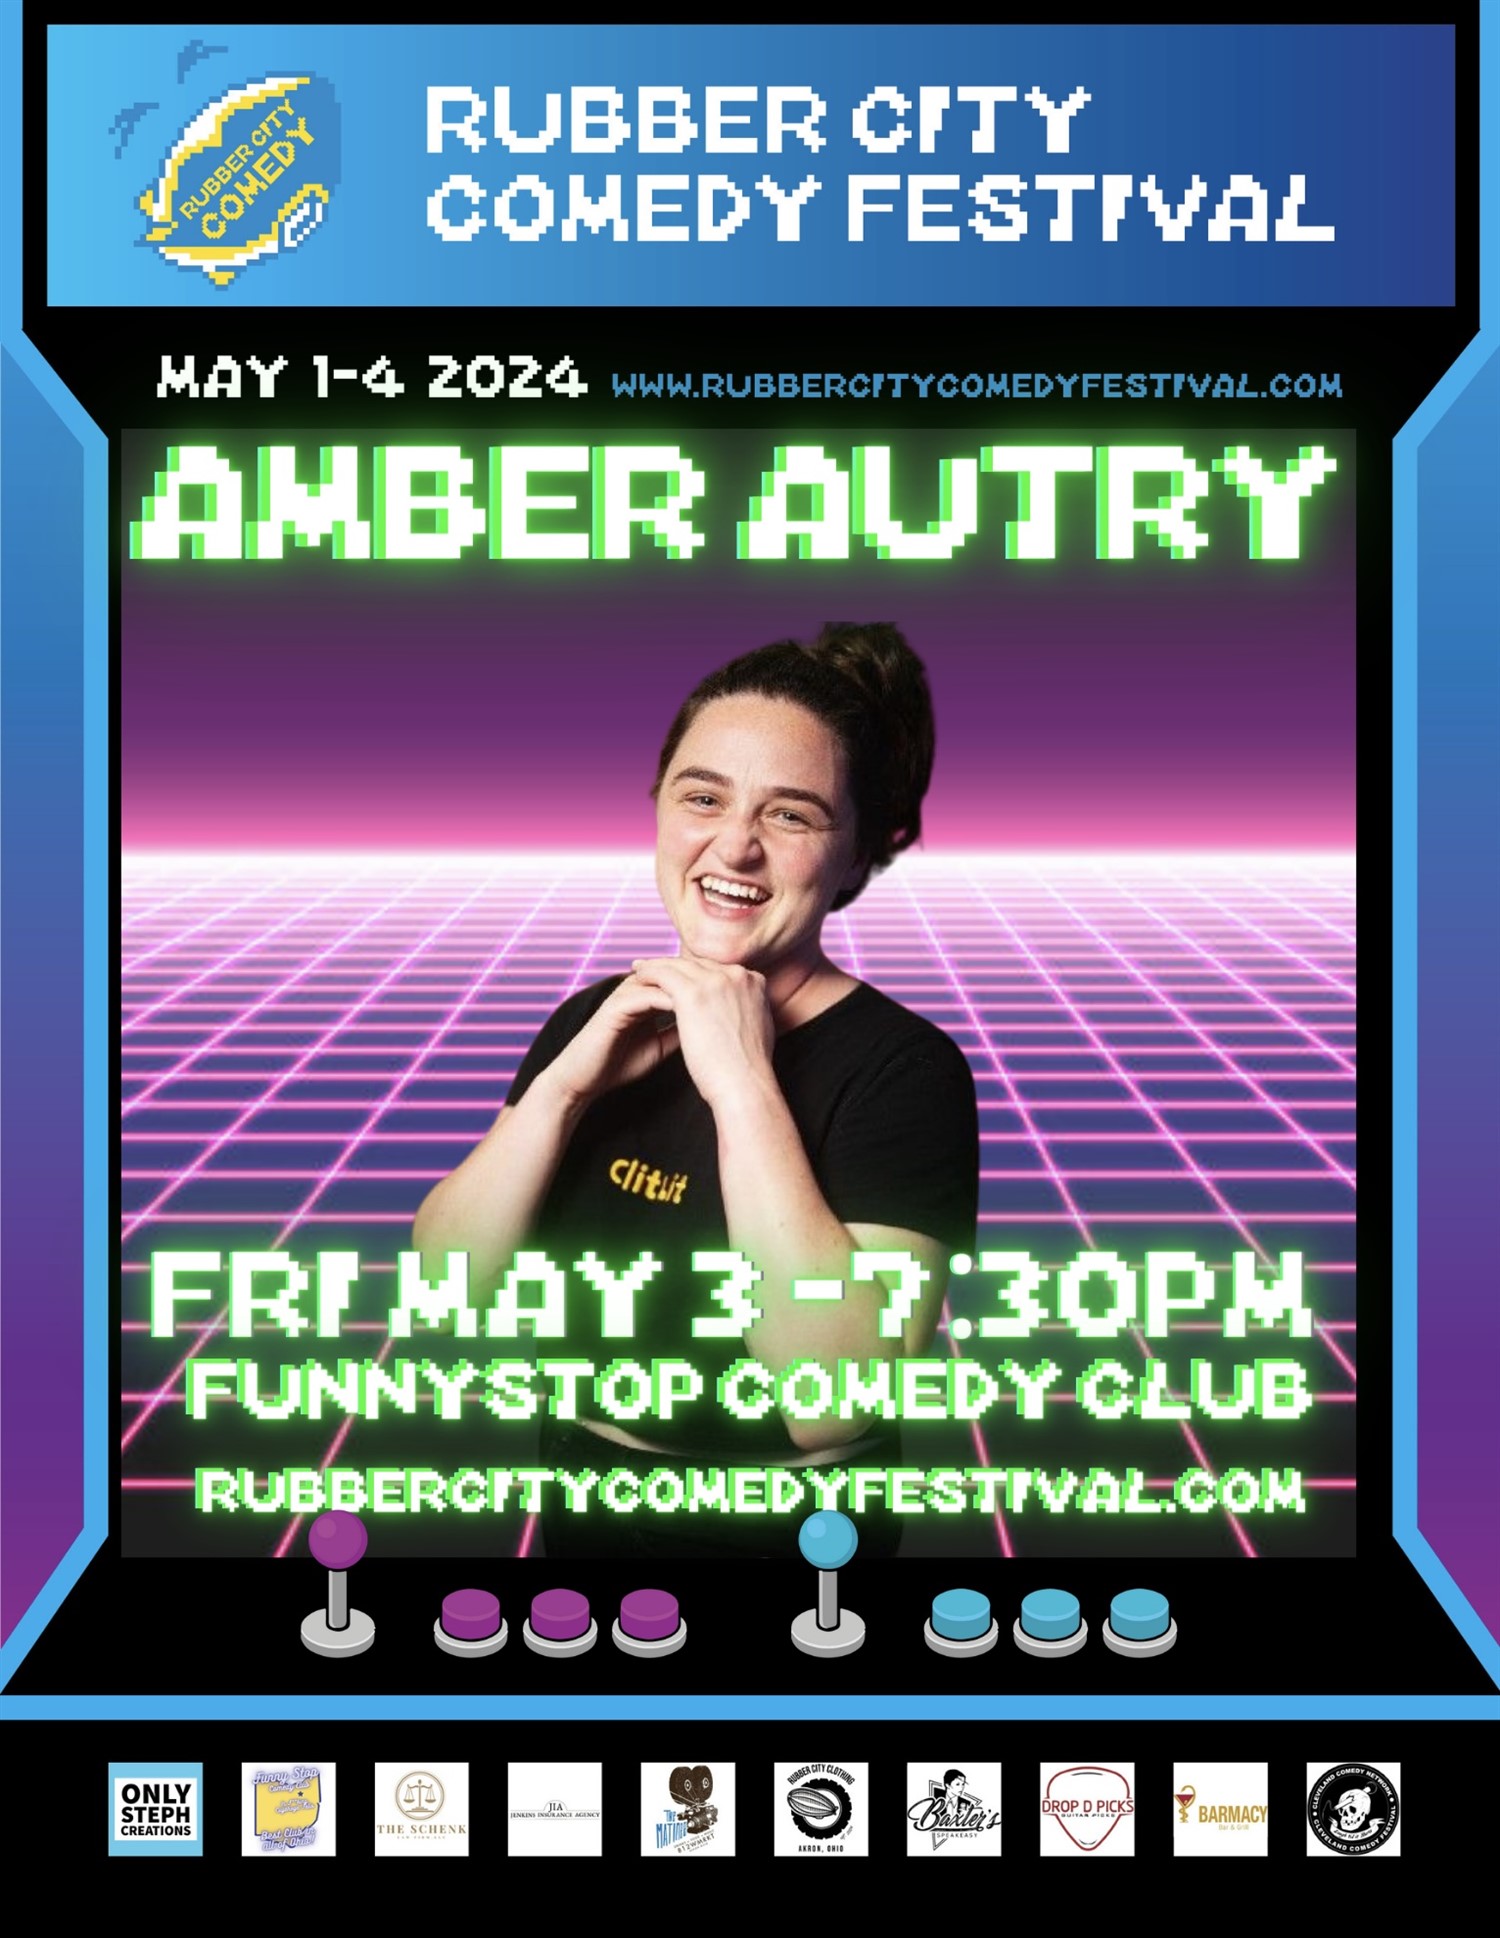 Amber Autry | 7:30 PM | Rubber City Comedy Festival Funny Stop Comedy Club on mai 03, 19:30@Funny Stop Comedy Club - Achetez des billets et obtenez des informations surFunny Stop funnystop.online